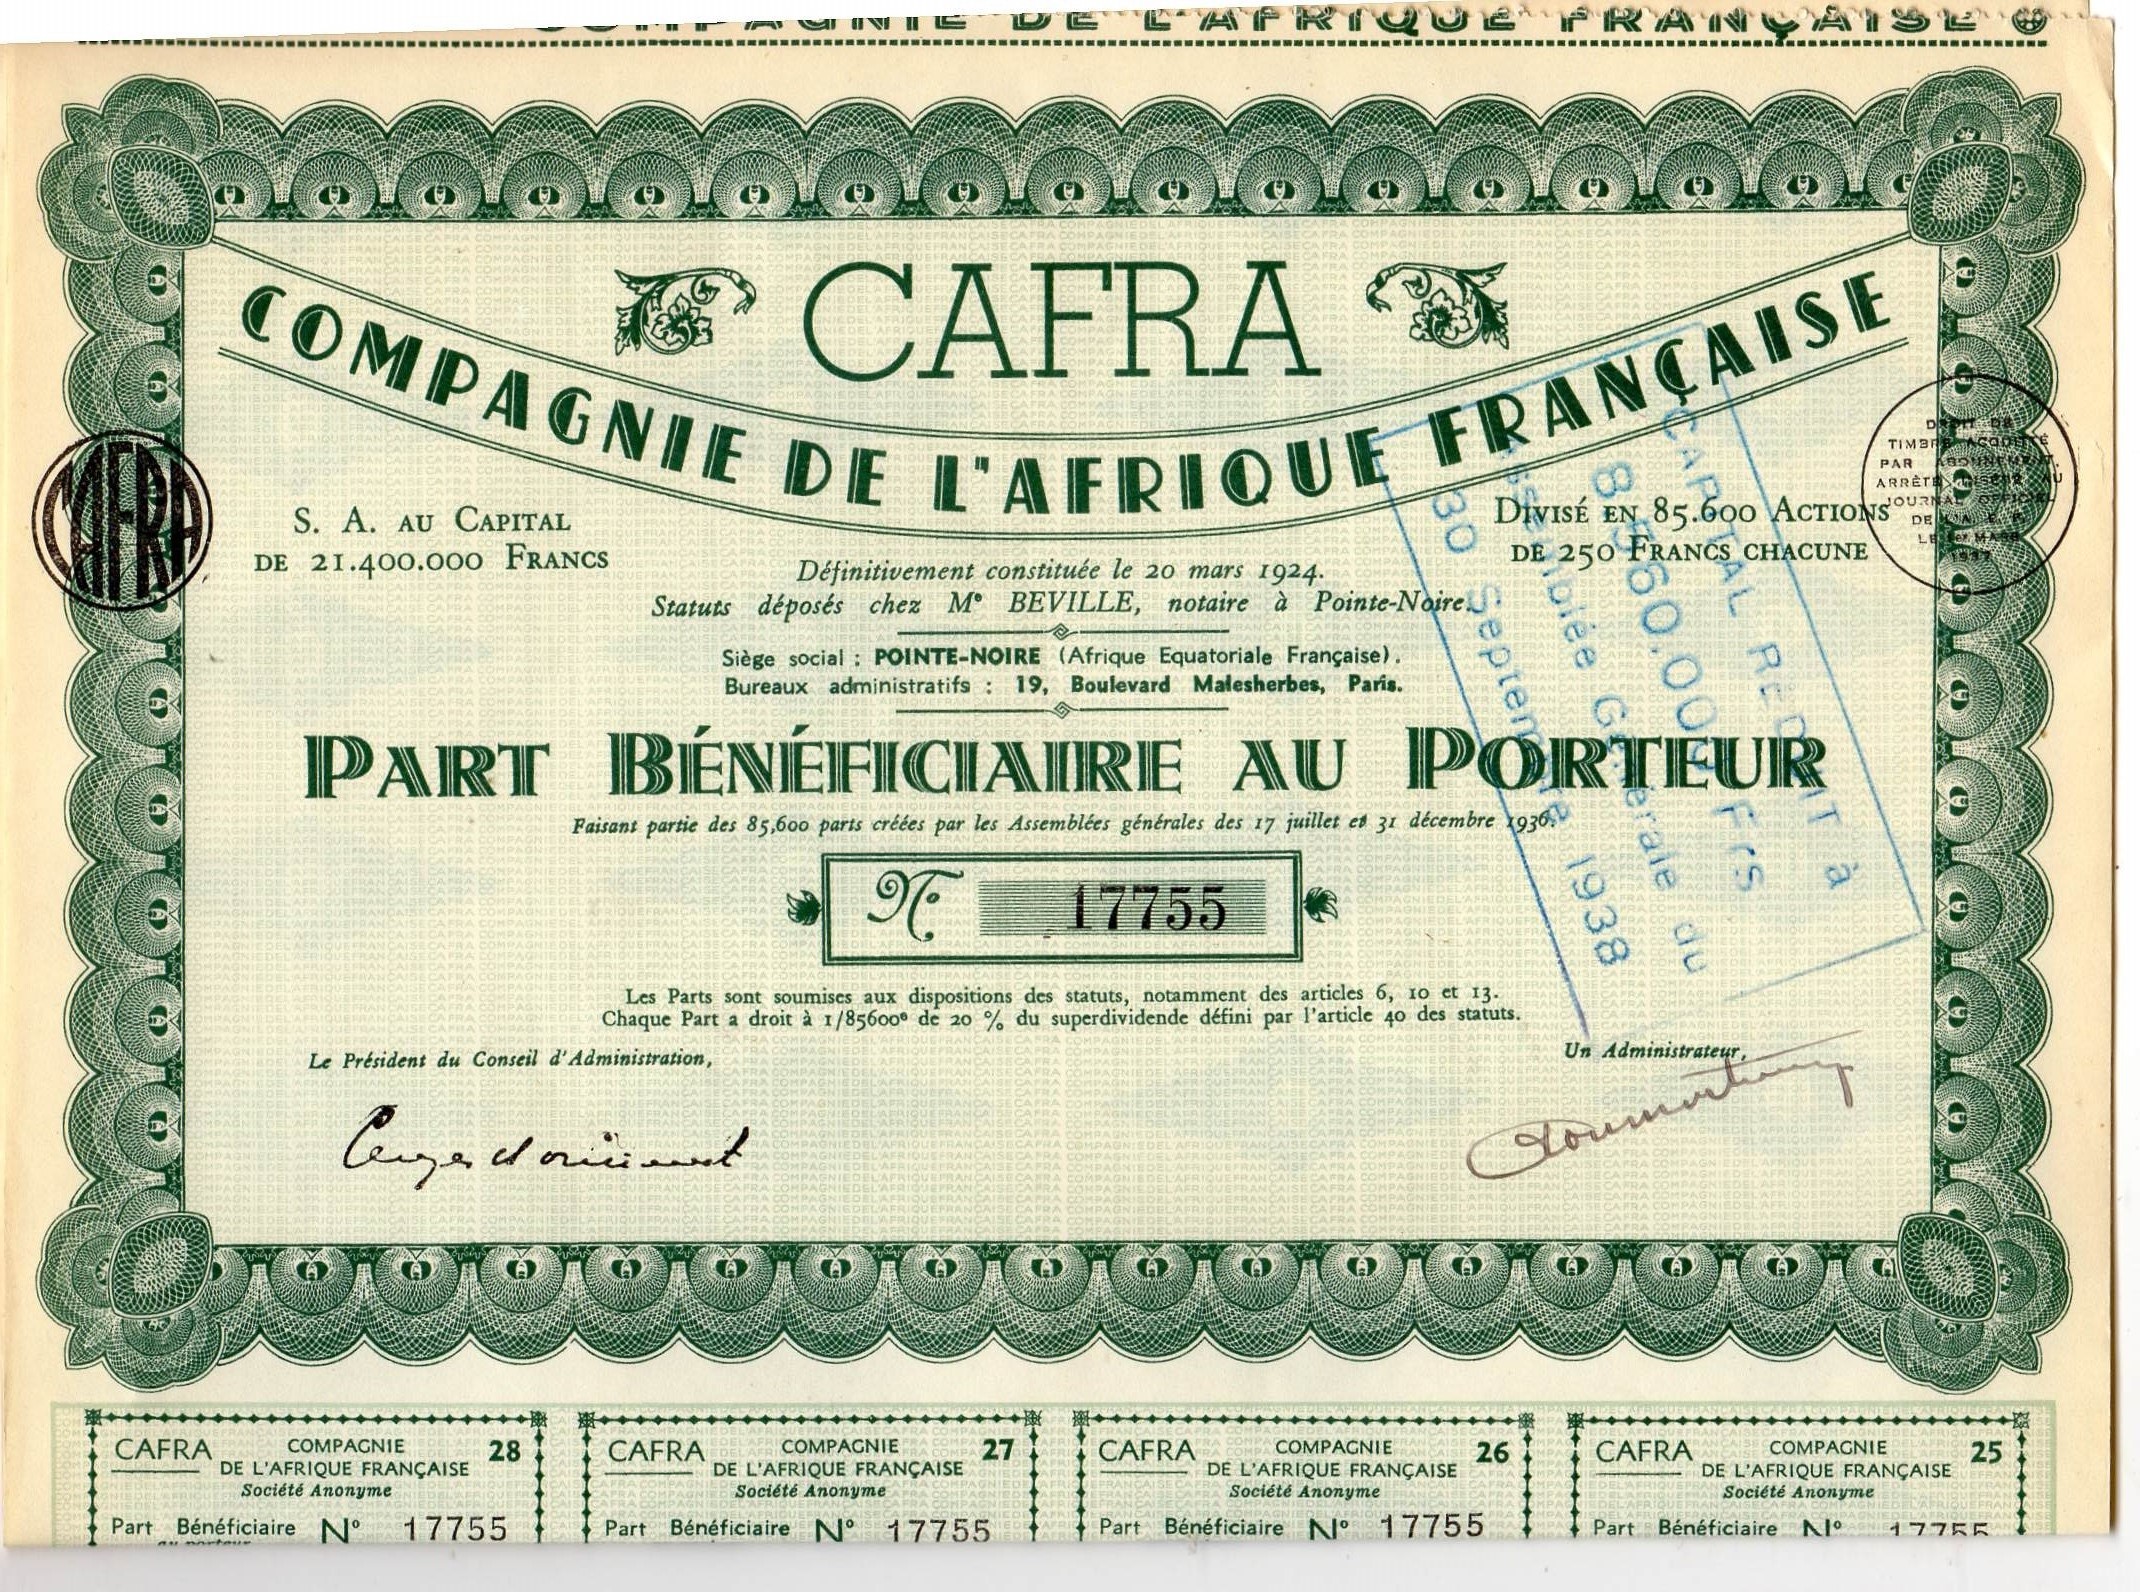 Cafra Compagnie de l"Afrique Francaise 250Fr  Paris 1924 nr 17755/17249/17248 pris pr stk